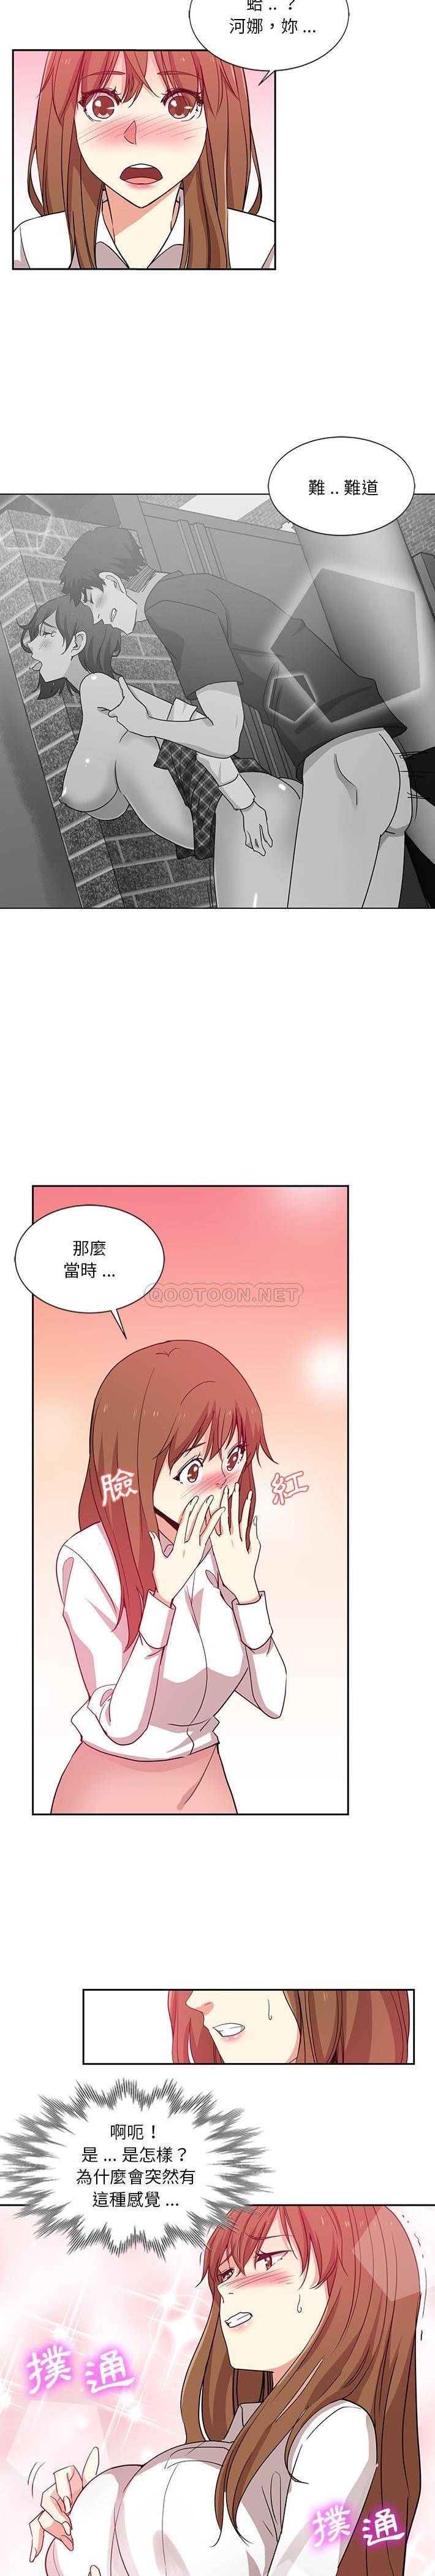 韩国污漫画 危險純友誼 第7话 6